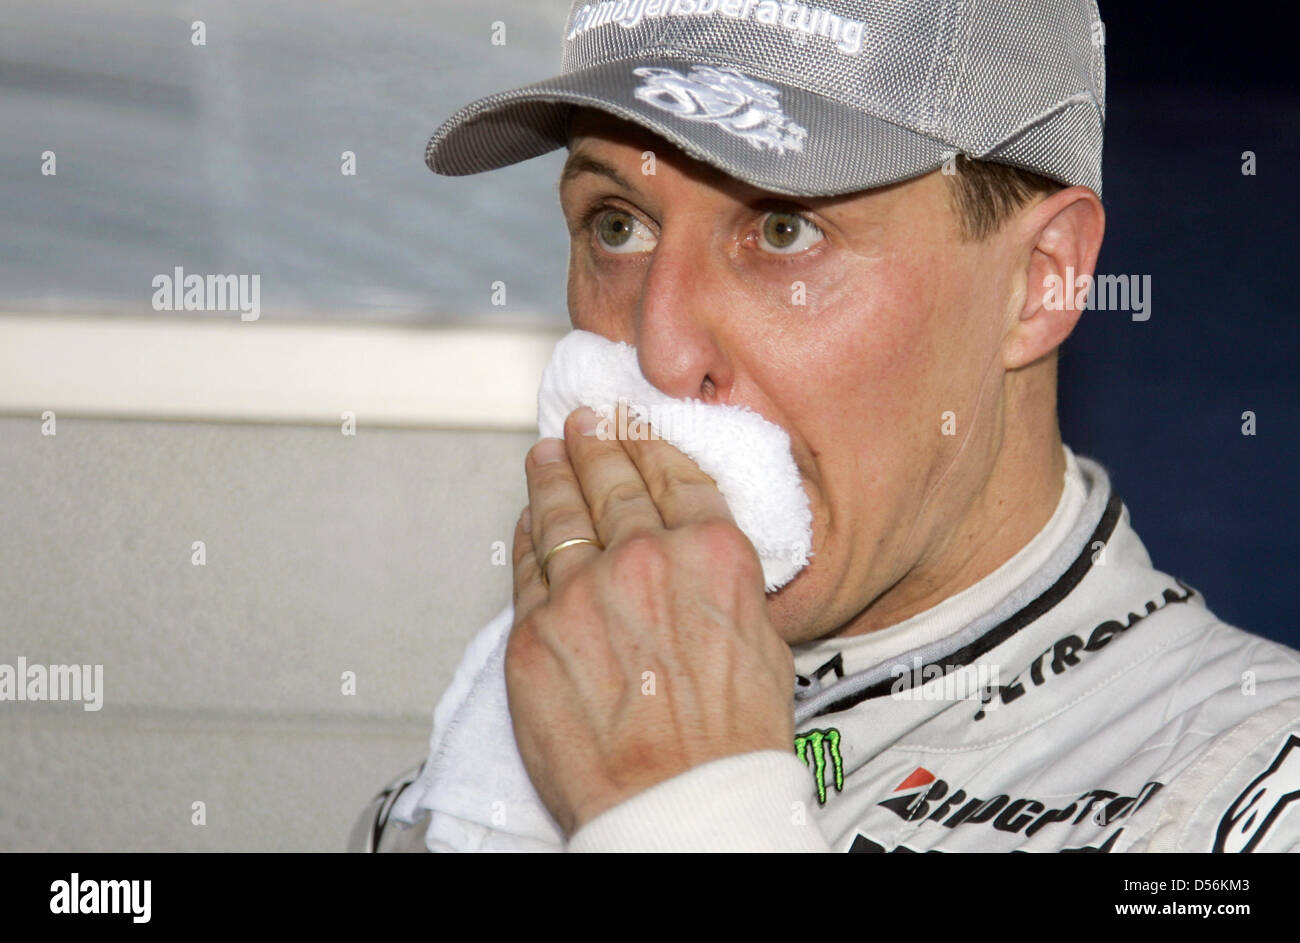 Deutschen Michael Schumacher Mercedes GP nach der Formel 1 Grand Prix von Bahrain an der Sakhir-Rennstrecke in Bahrain, 14. März 2010 gesehen. Er wurde Sechster im ersten Rennen nach seiner dreijährigen Pause. Der Grand Prix von Bahrain startete die Formel1 Saison 2010. Foto: JENS Büttner Stockfoto